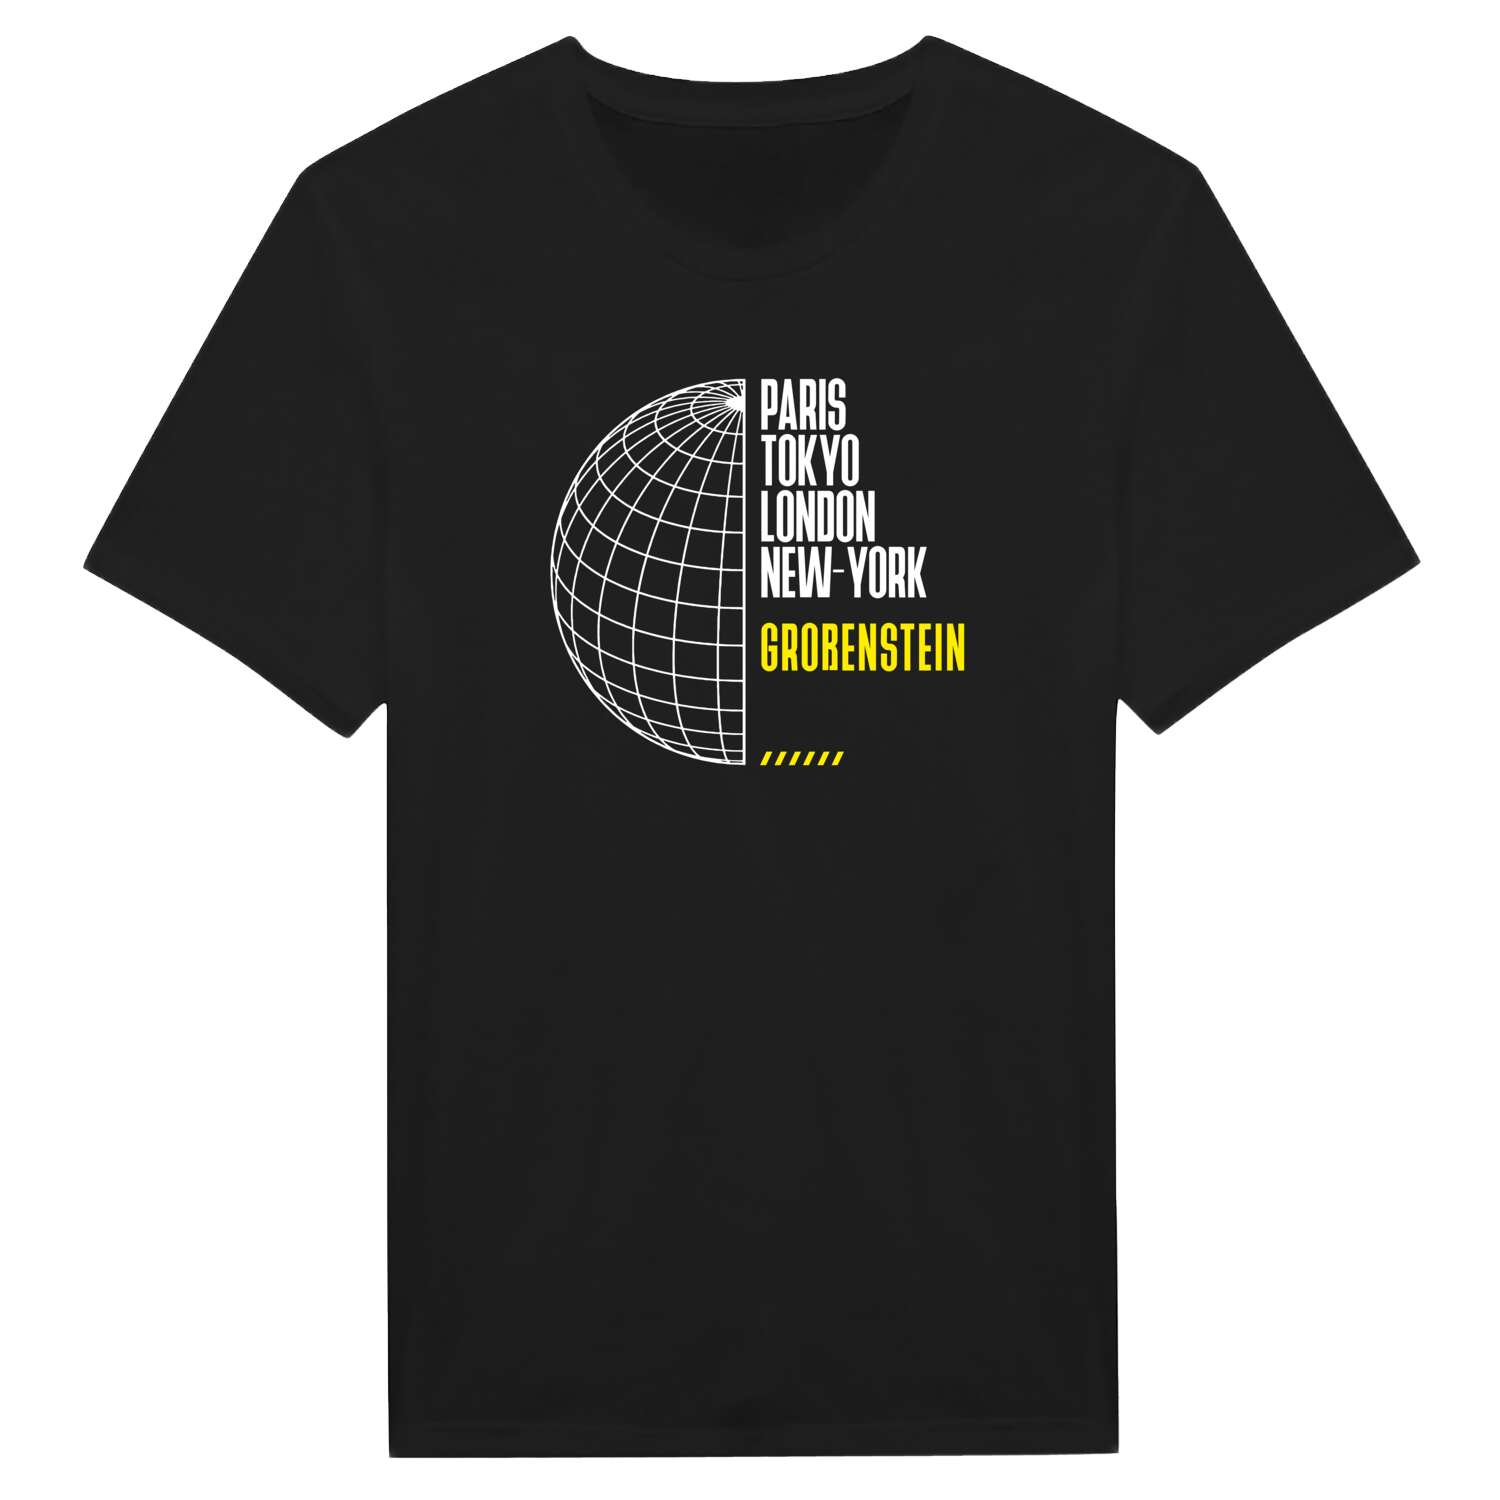 Großenstein T-Shirt »Paris Tokyo London«